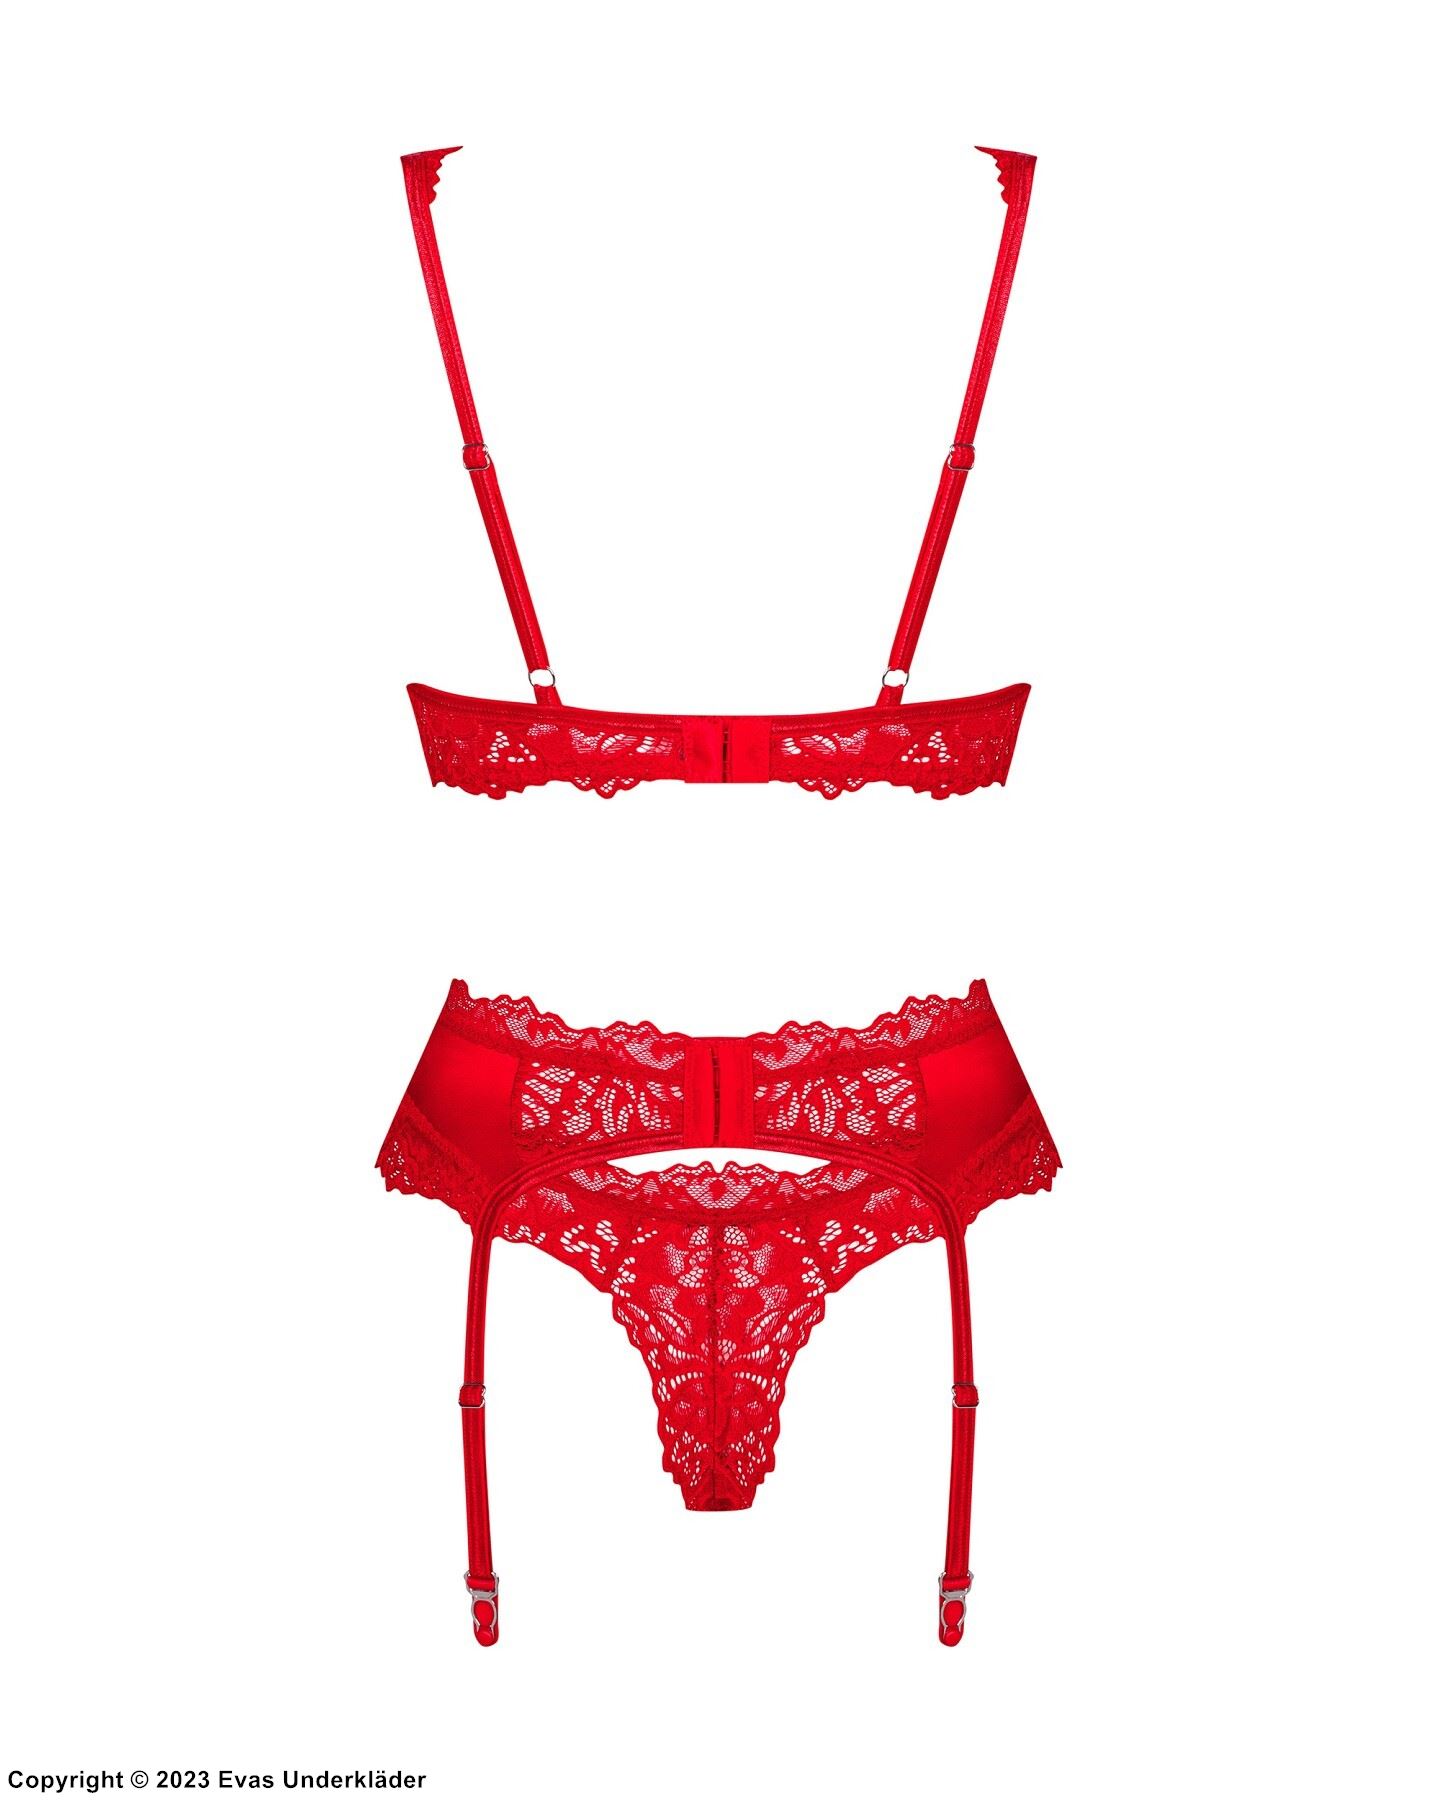 Romantic lingerie set, satin, luxurious lace